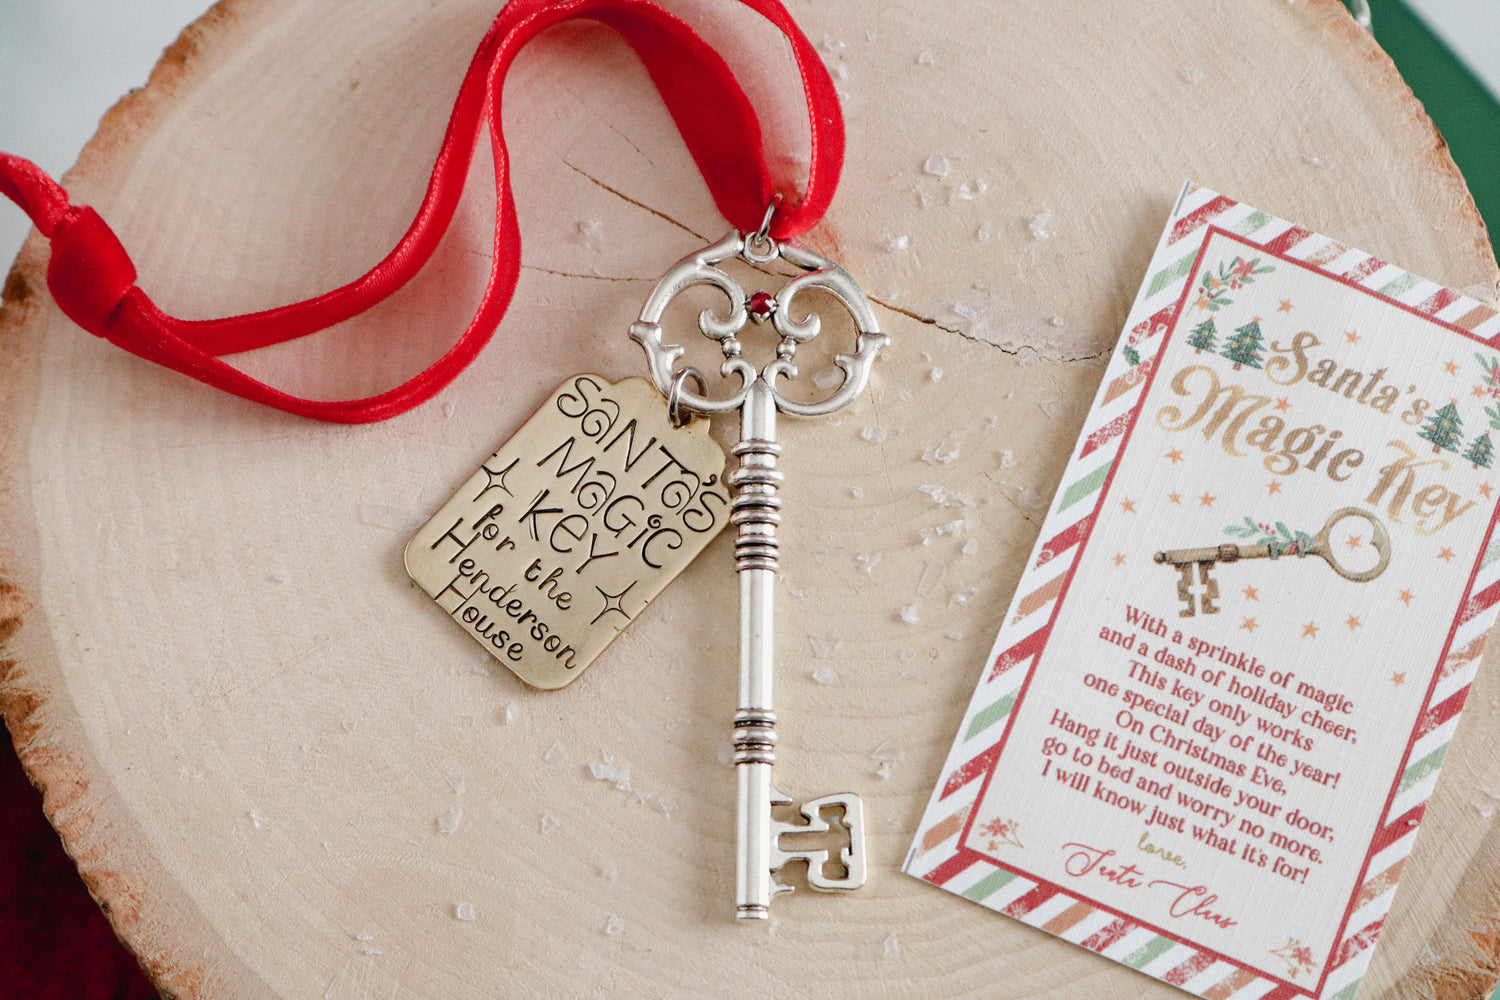 10 Pcs Santa's Key Santa's Magic Key Set Santa Key with Card Satin